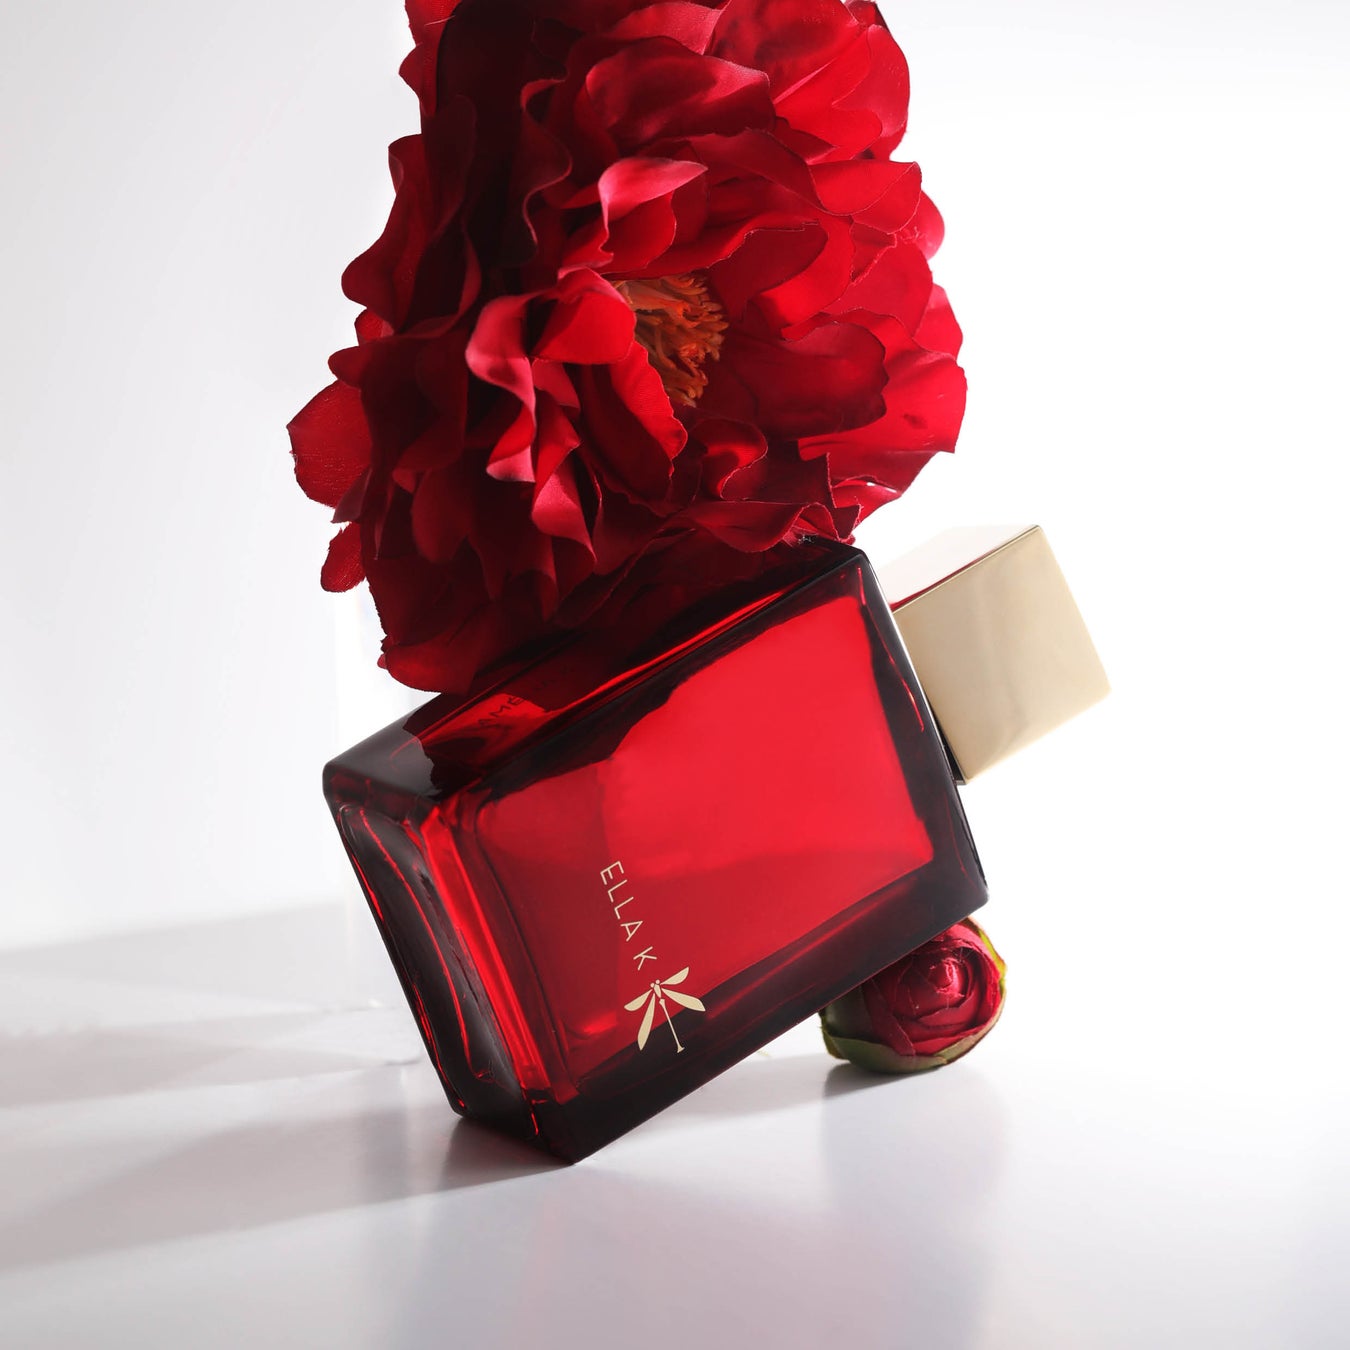 ELLA K「カメリア Ｋ」オードパルファンが英国フレグランス財団の″Perfume Extraordinaire ”受賞！！